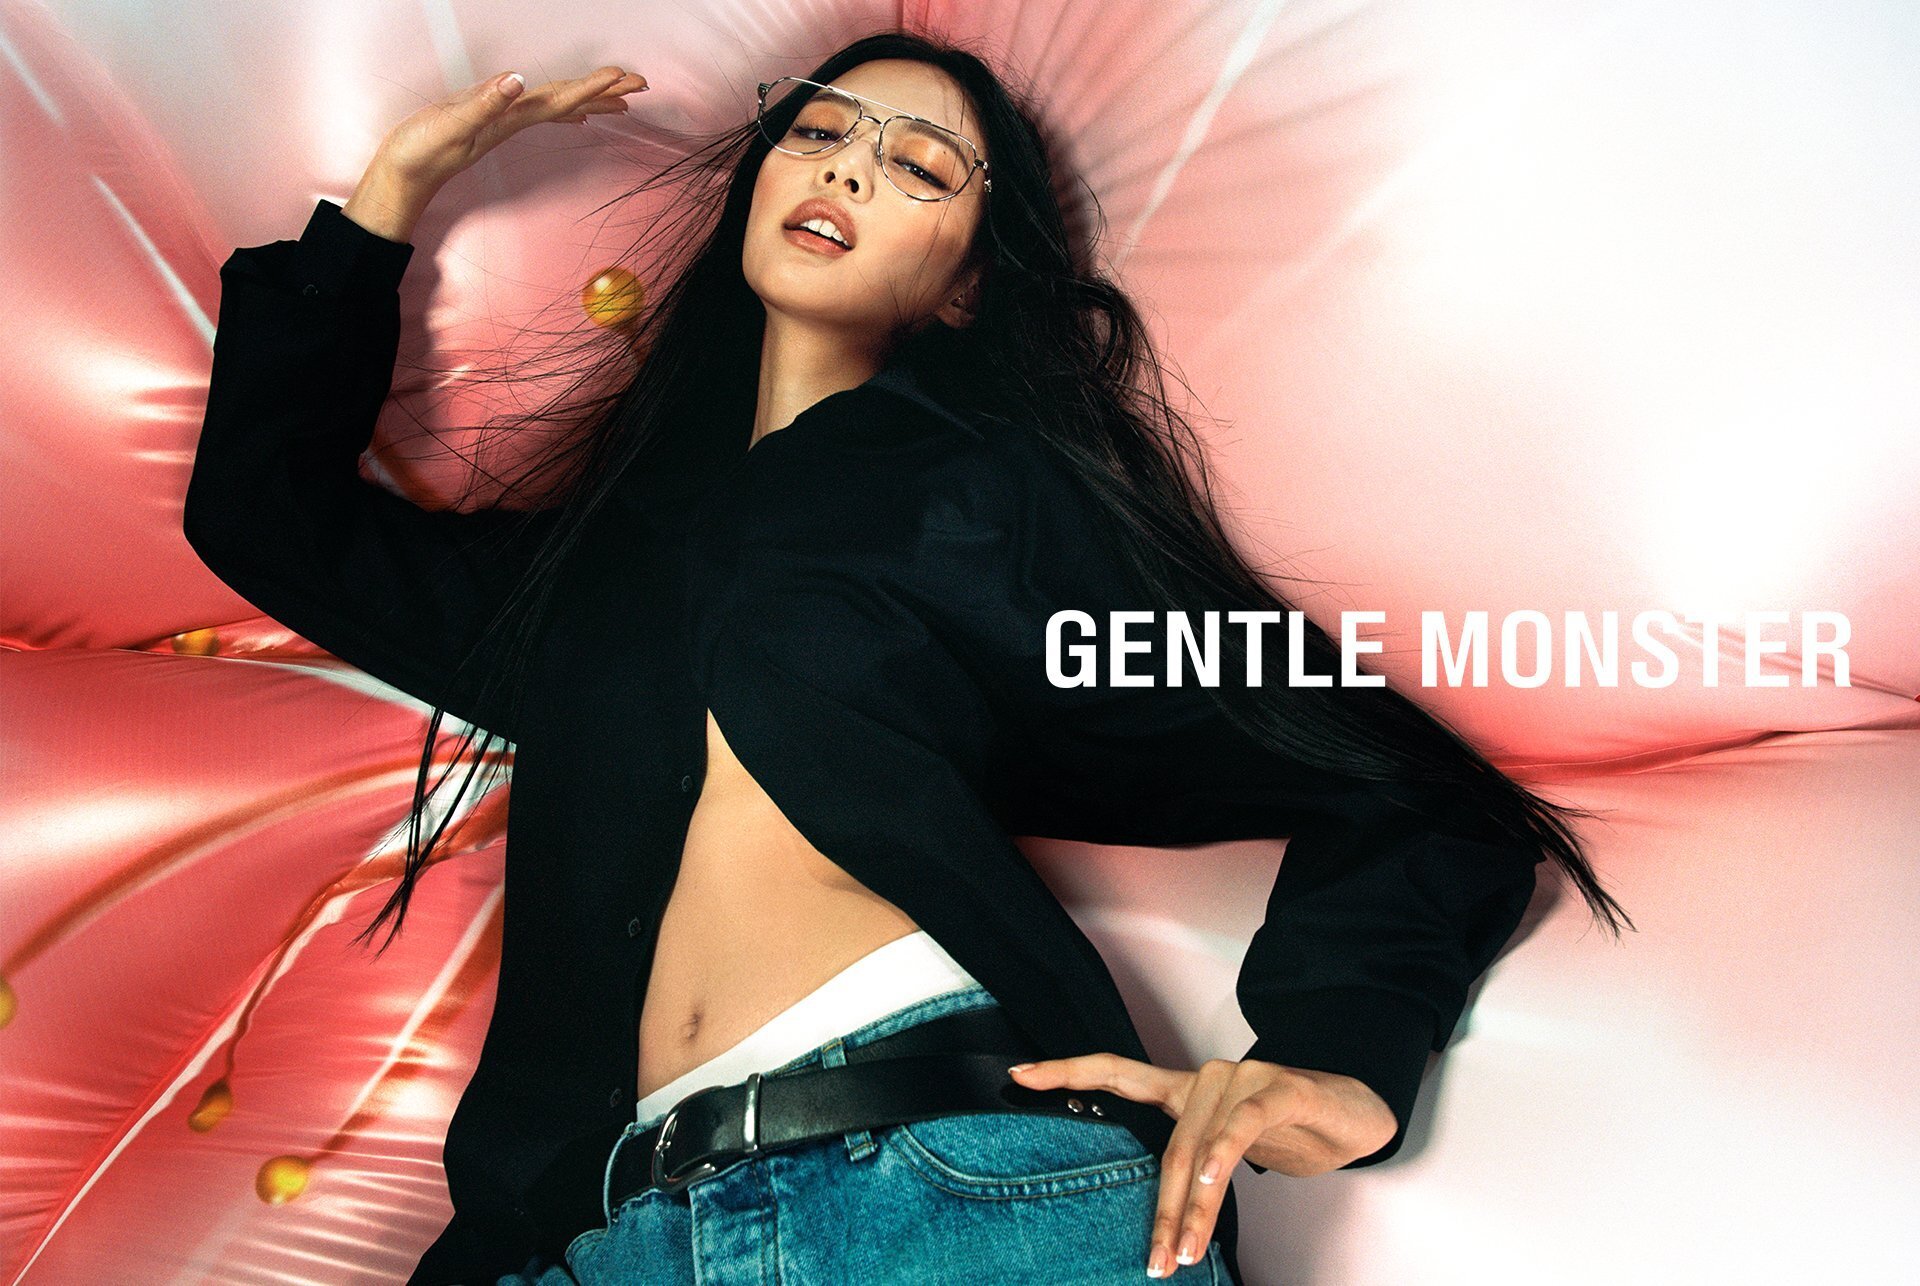 Play 'JENTLE GARDEN' with Jennie💝 #GentleMonsterxJennie #Jennie